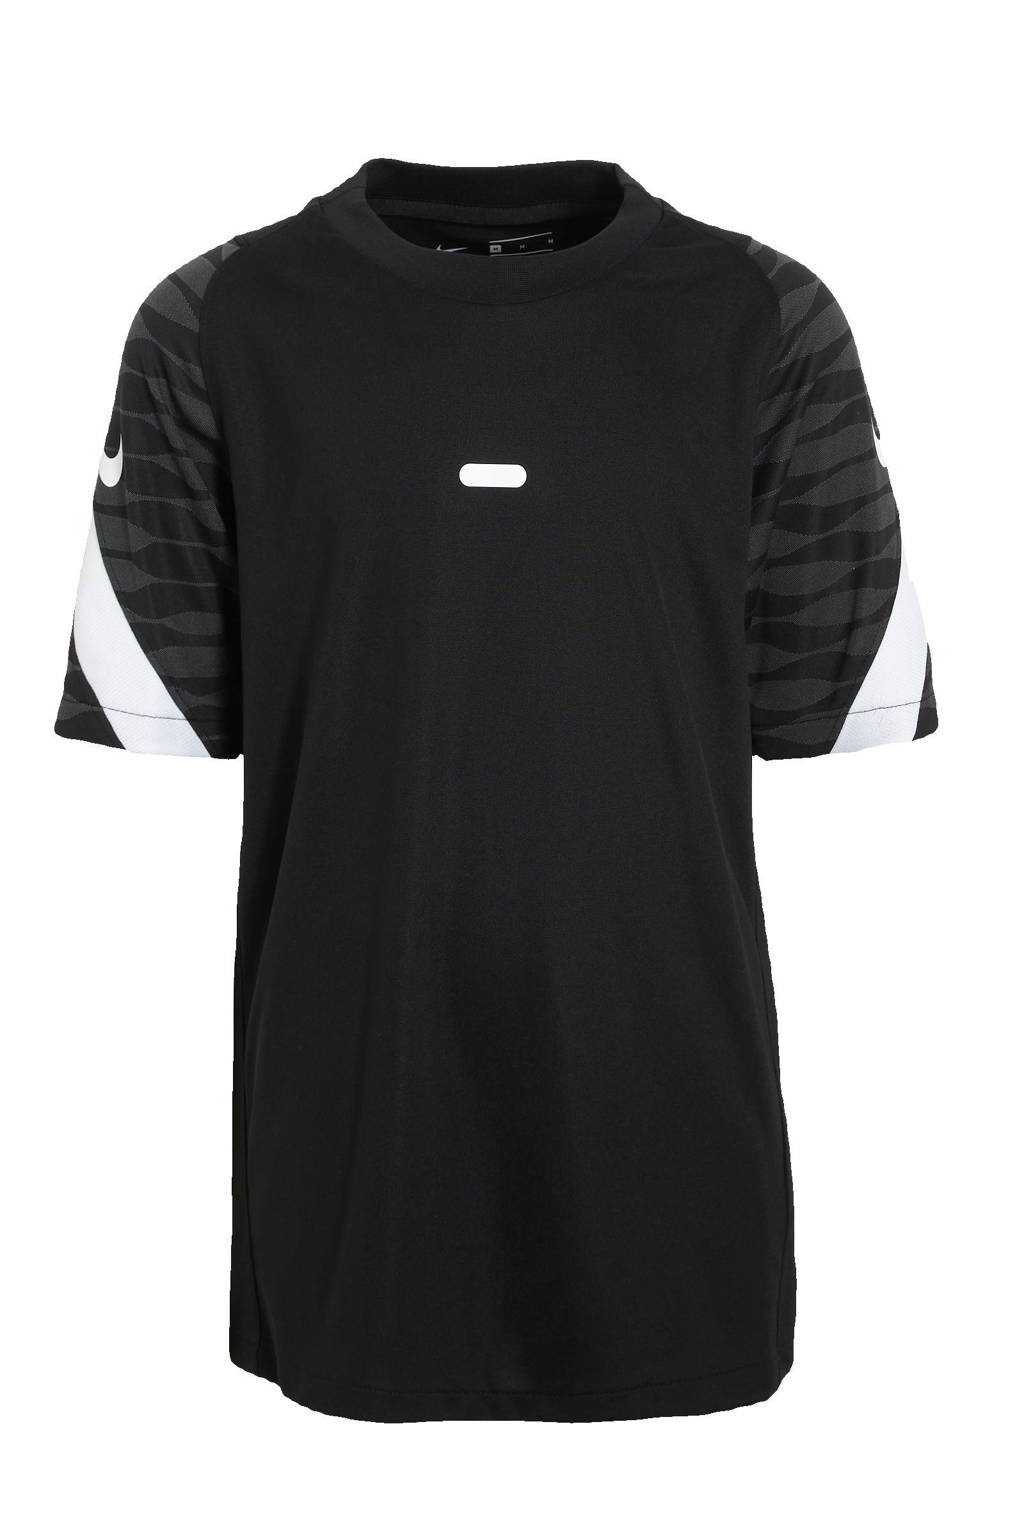 Zwart en antraciete jongens en meisjes Nike Junior voetbalshirt van polyester met logo dessin, korte mouwen en ronde hals